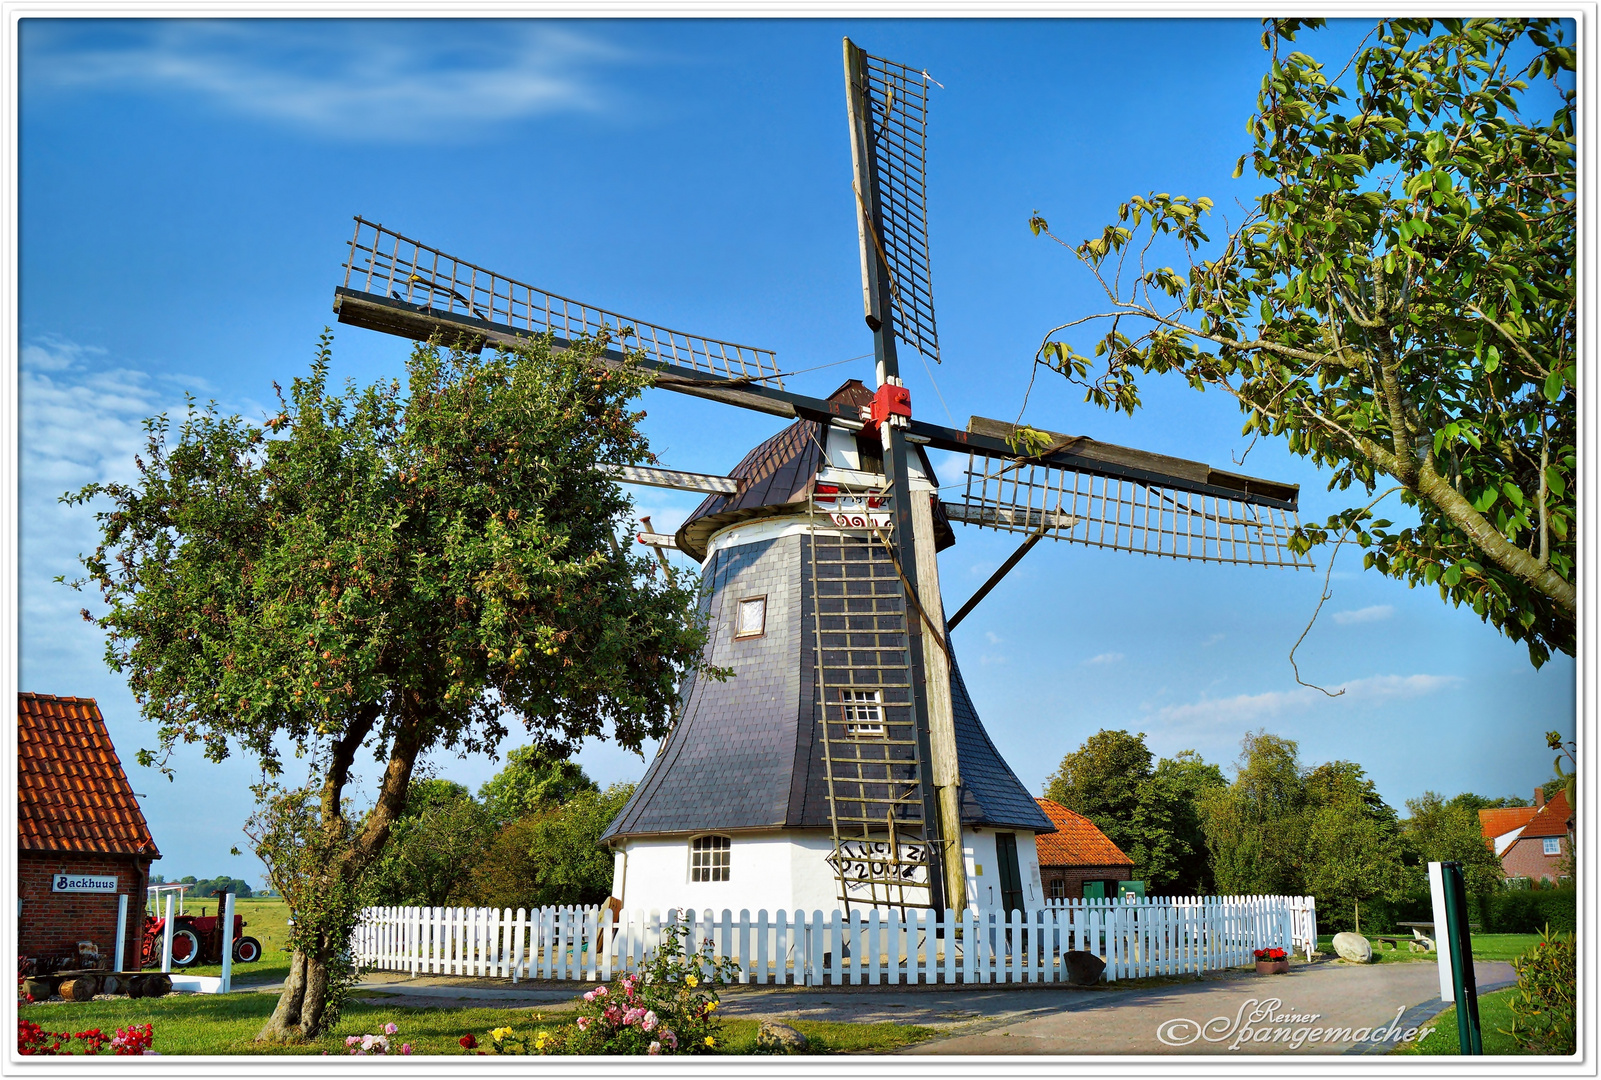 Windmühle von Werdum/Wittmund